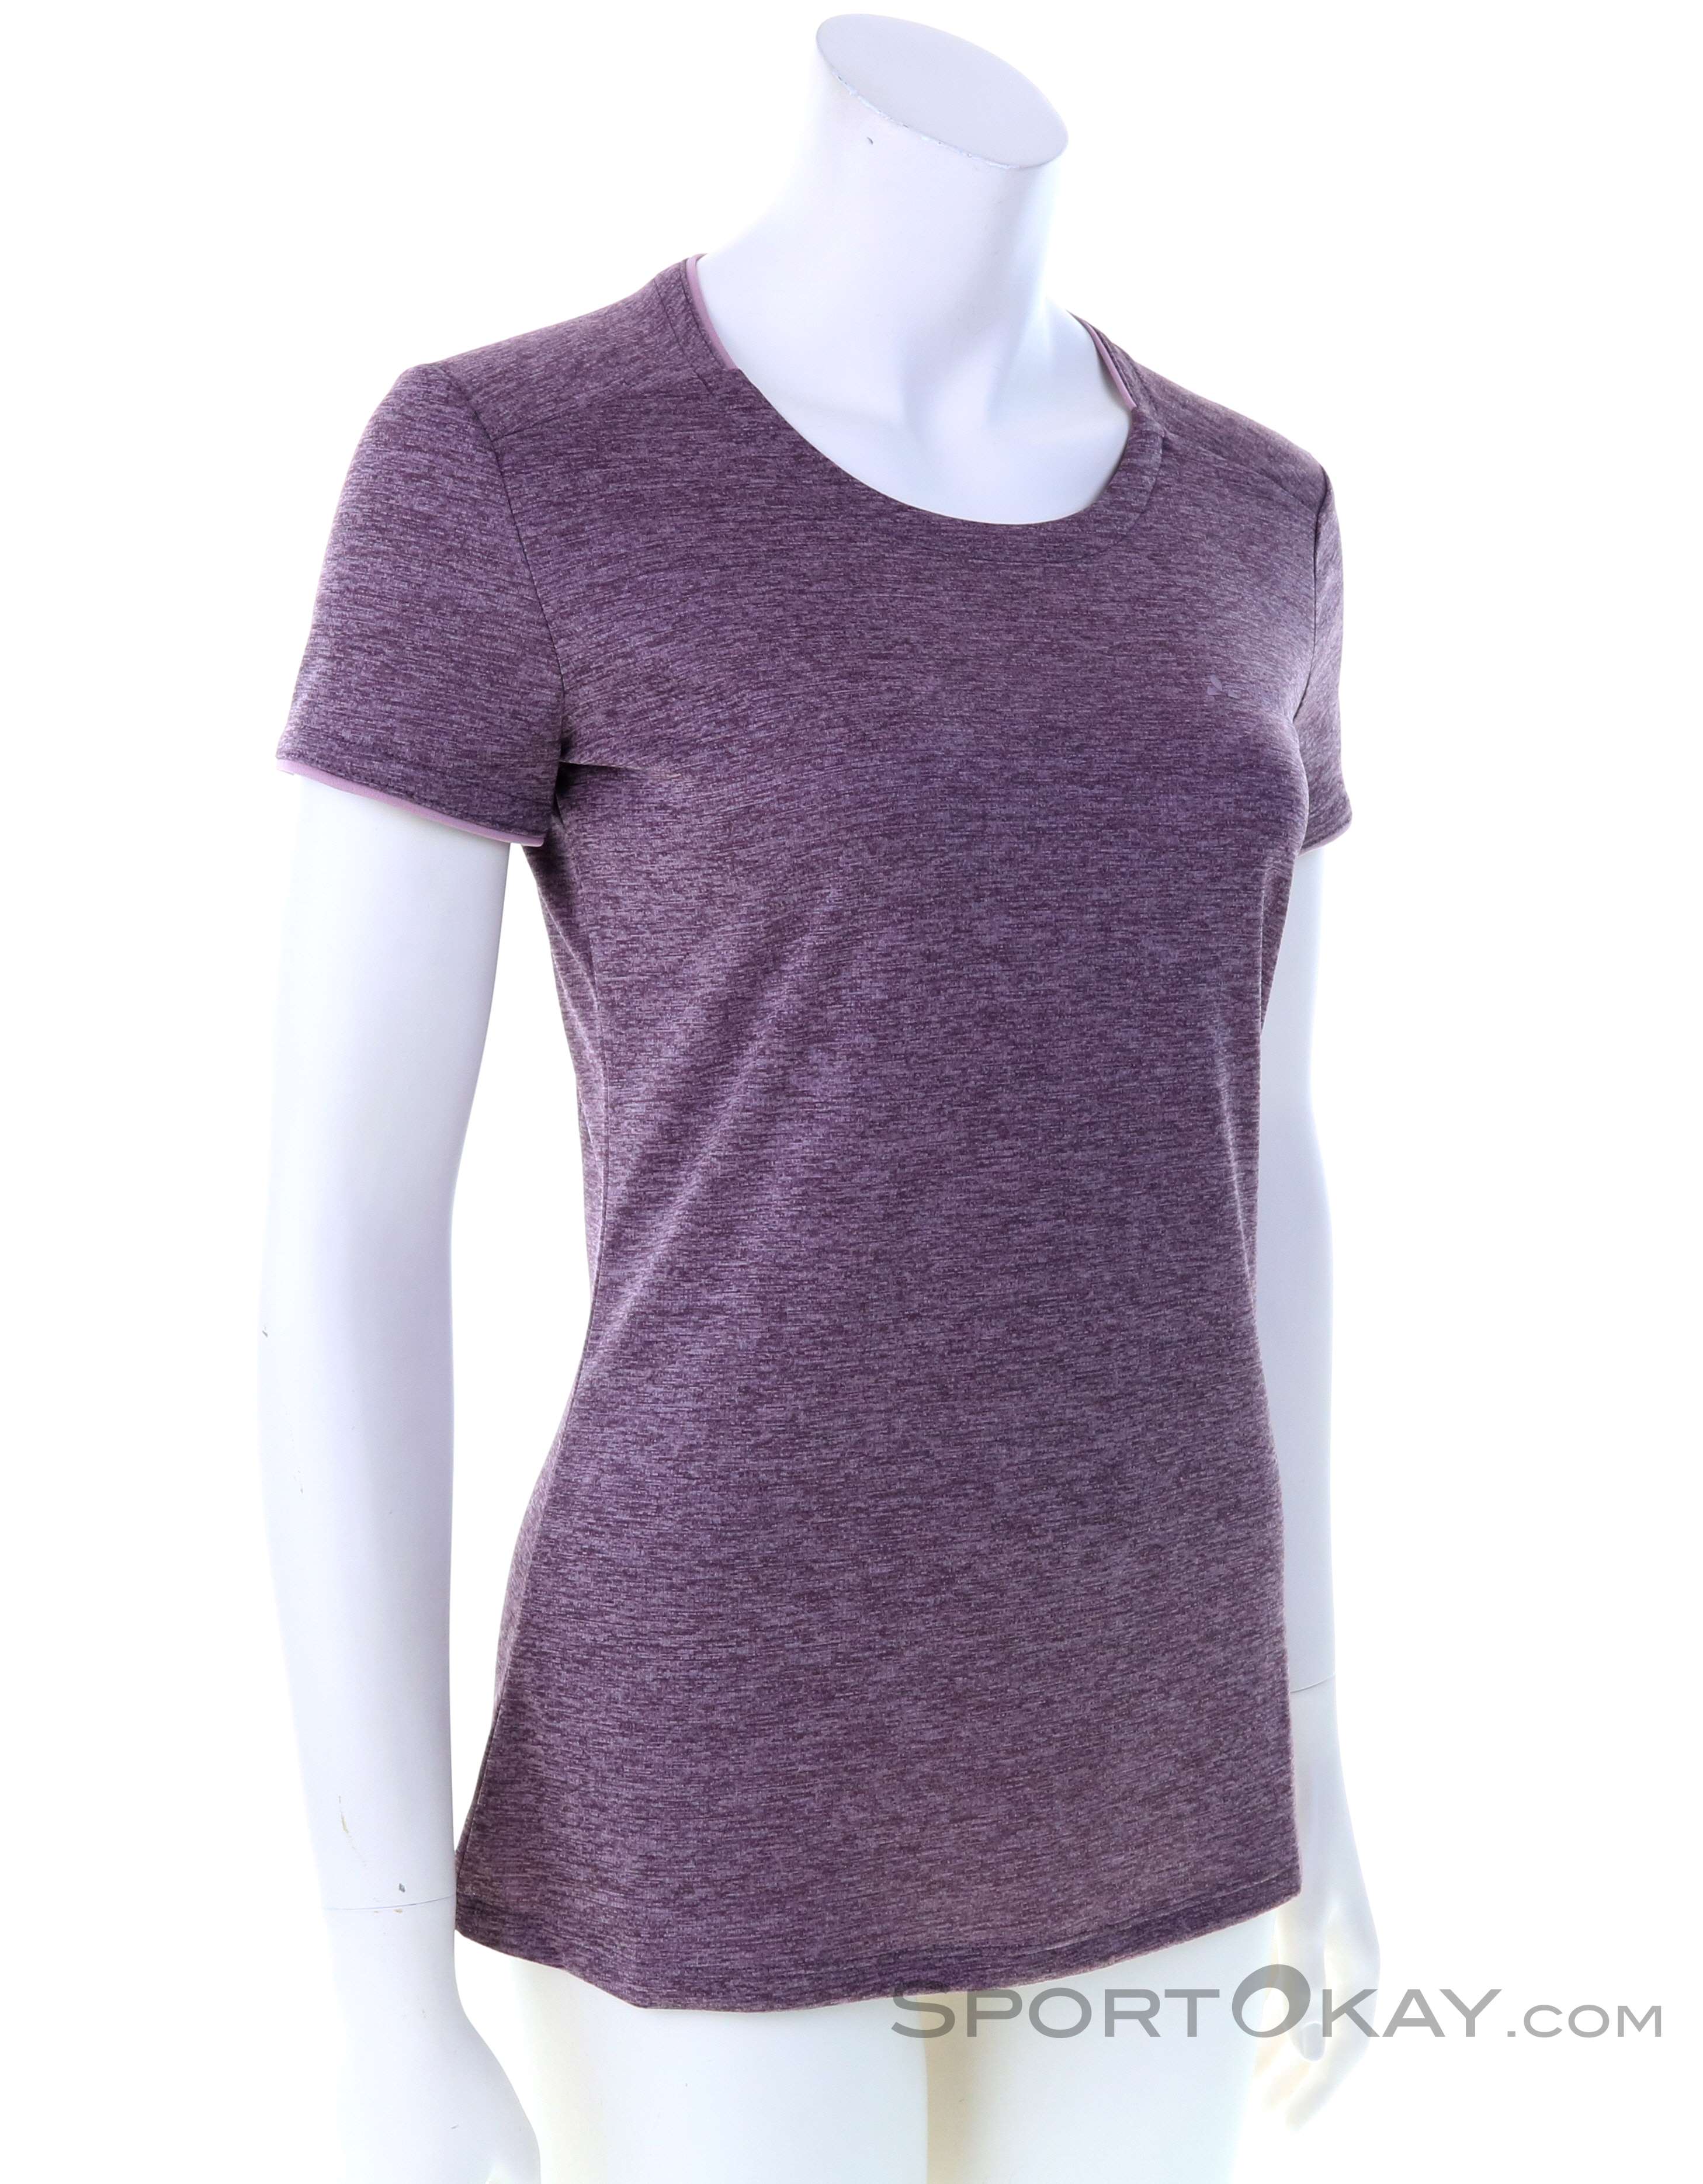 & Essential Hemden - Alle Damas Outdoorbekleidung Outdoor - Vaude T-Shirt Shirts - -